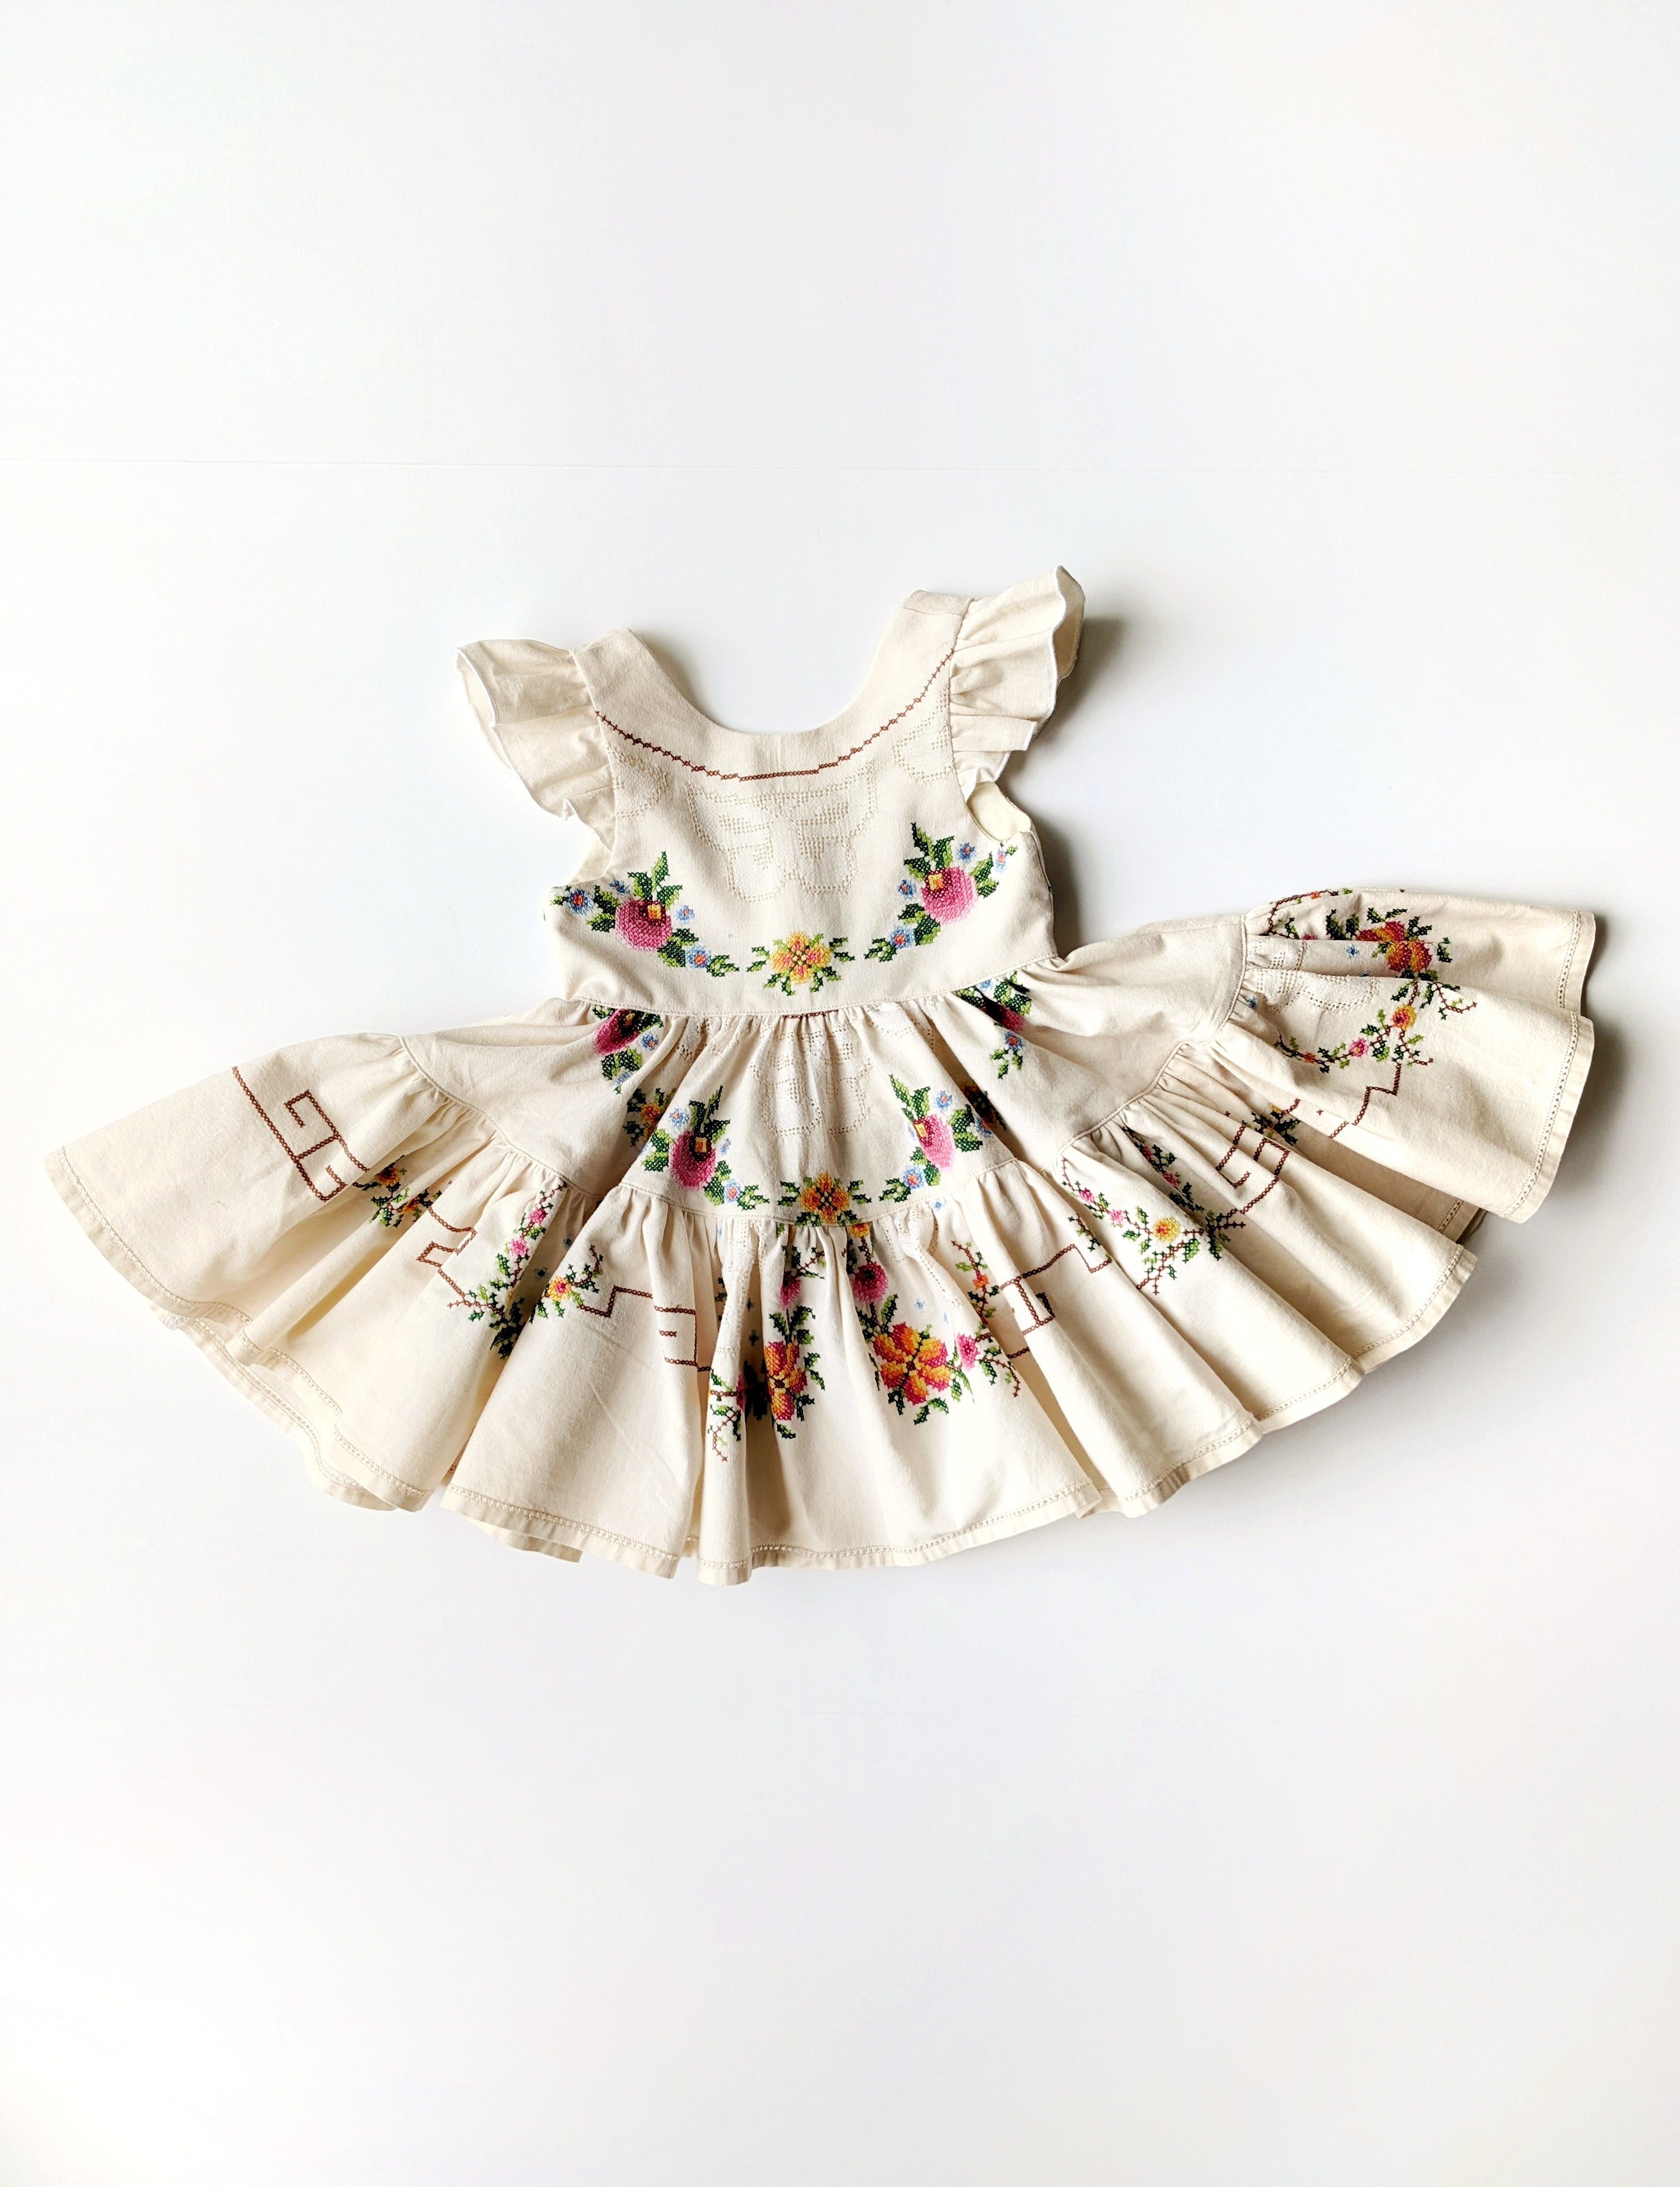 "Gardenia" style Dress - Size 2T